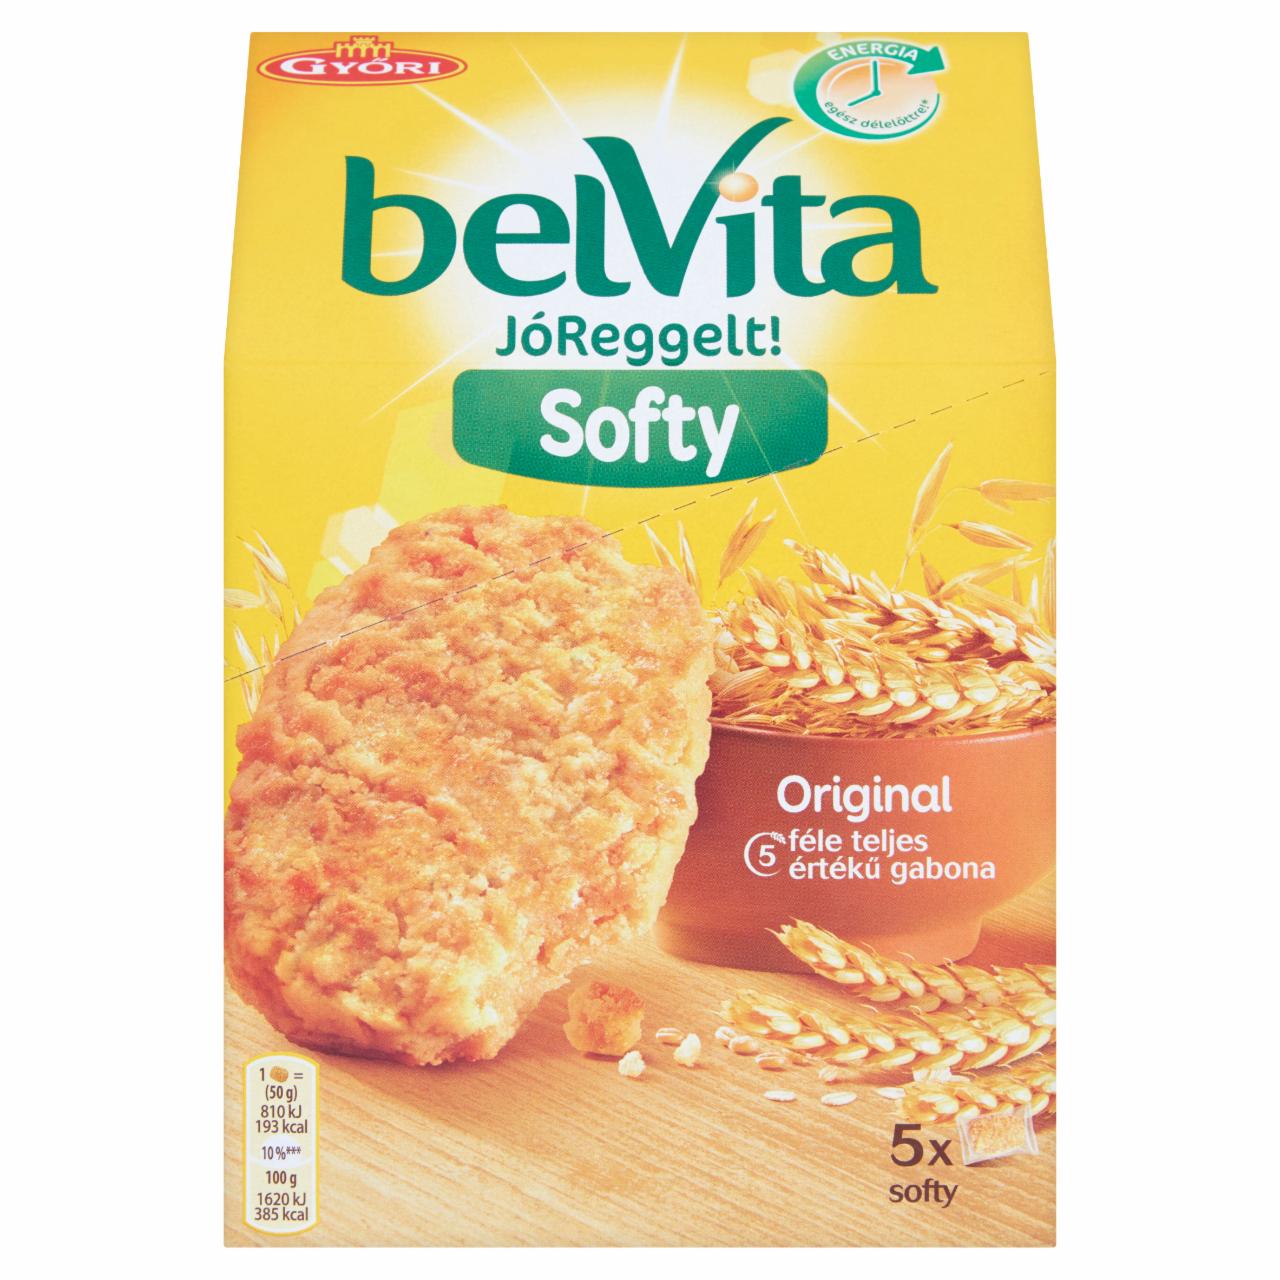 Képek - Belvita JóReggelt! Softy Original gabonás keksz 5 db 250 g